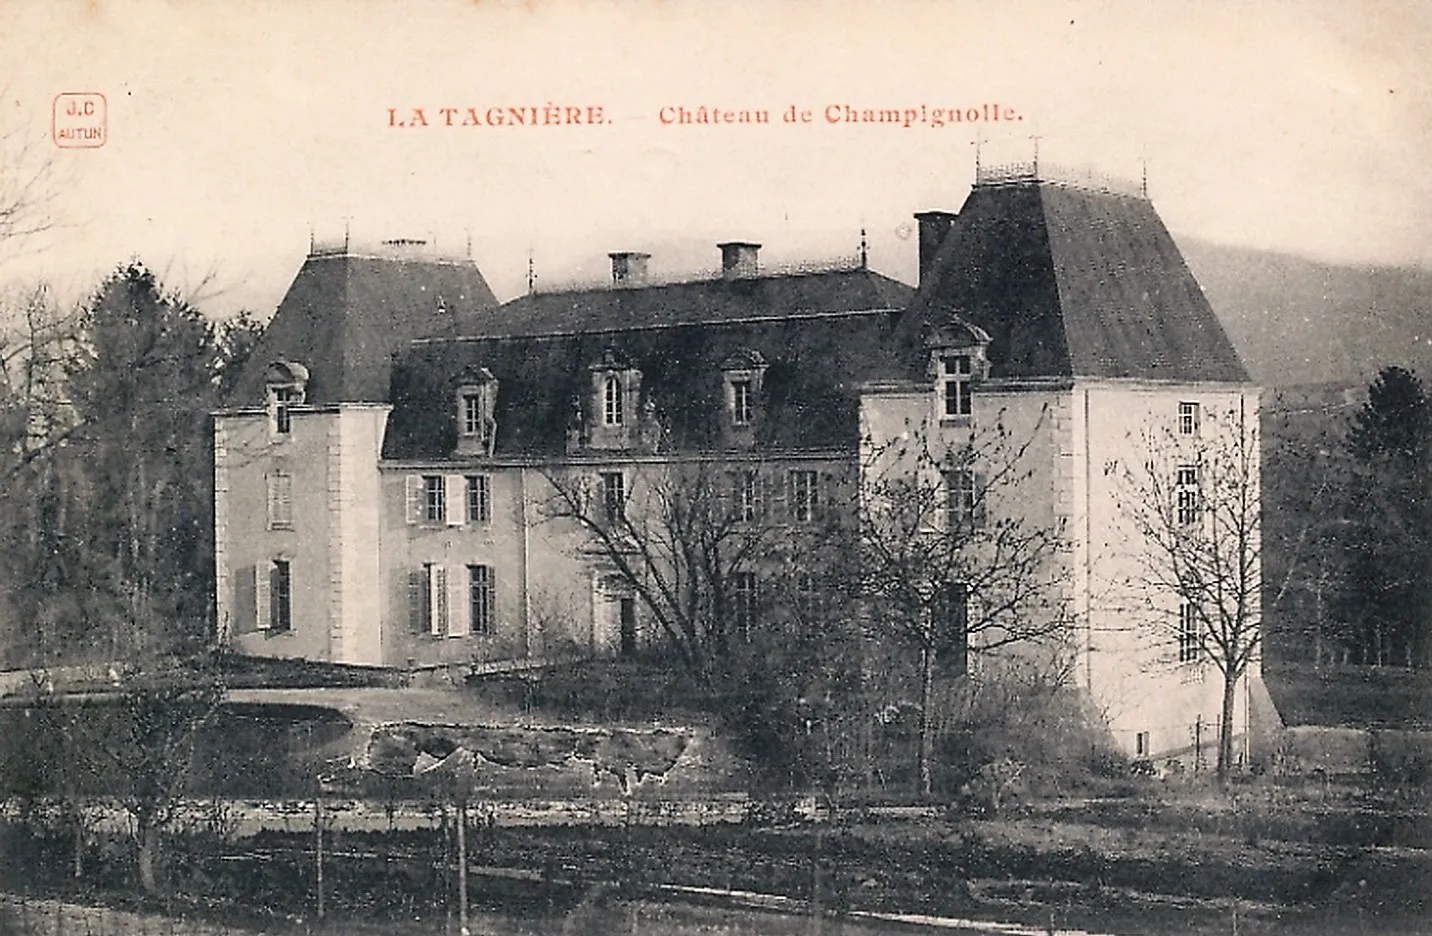 Photo showing: Le château de Champignolle de La Tagnière Saône-et-Loire